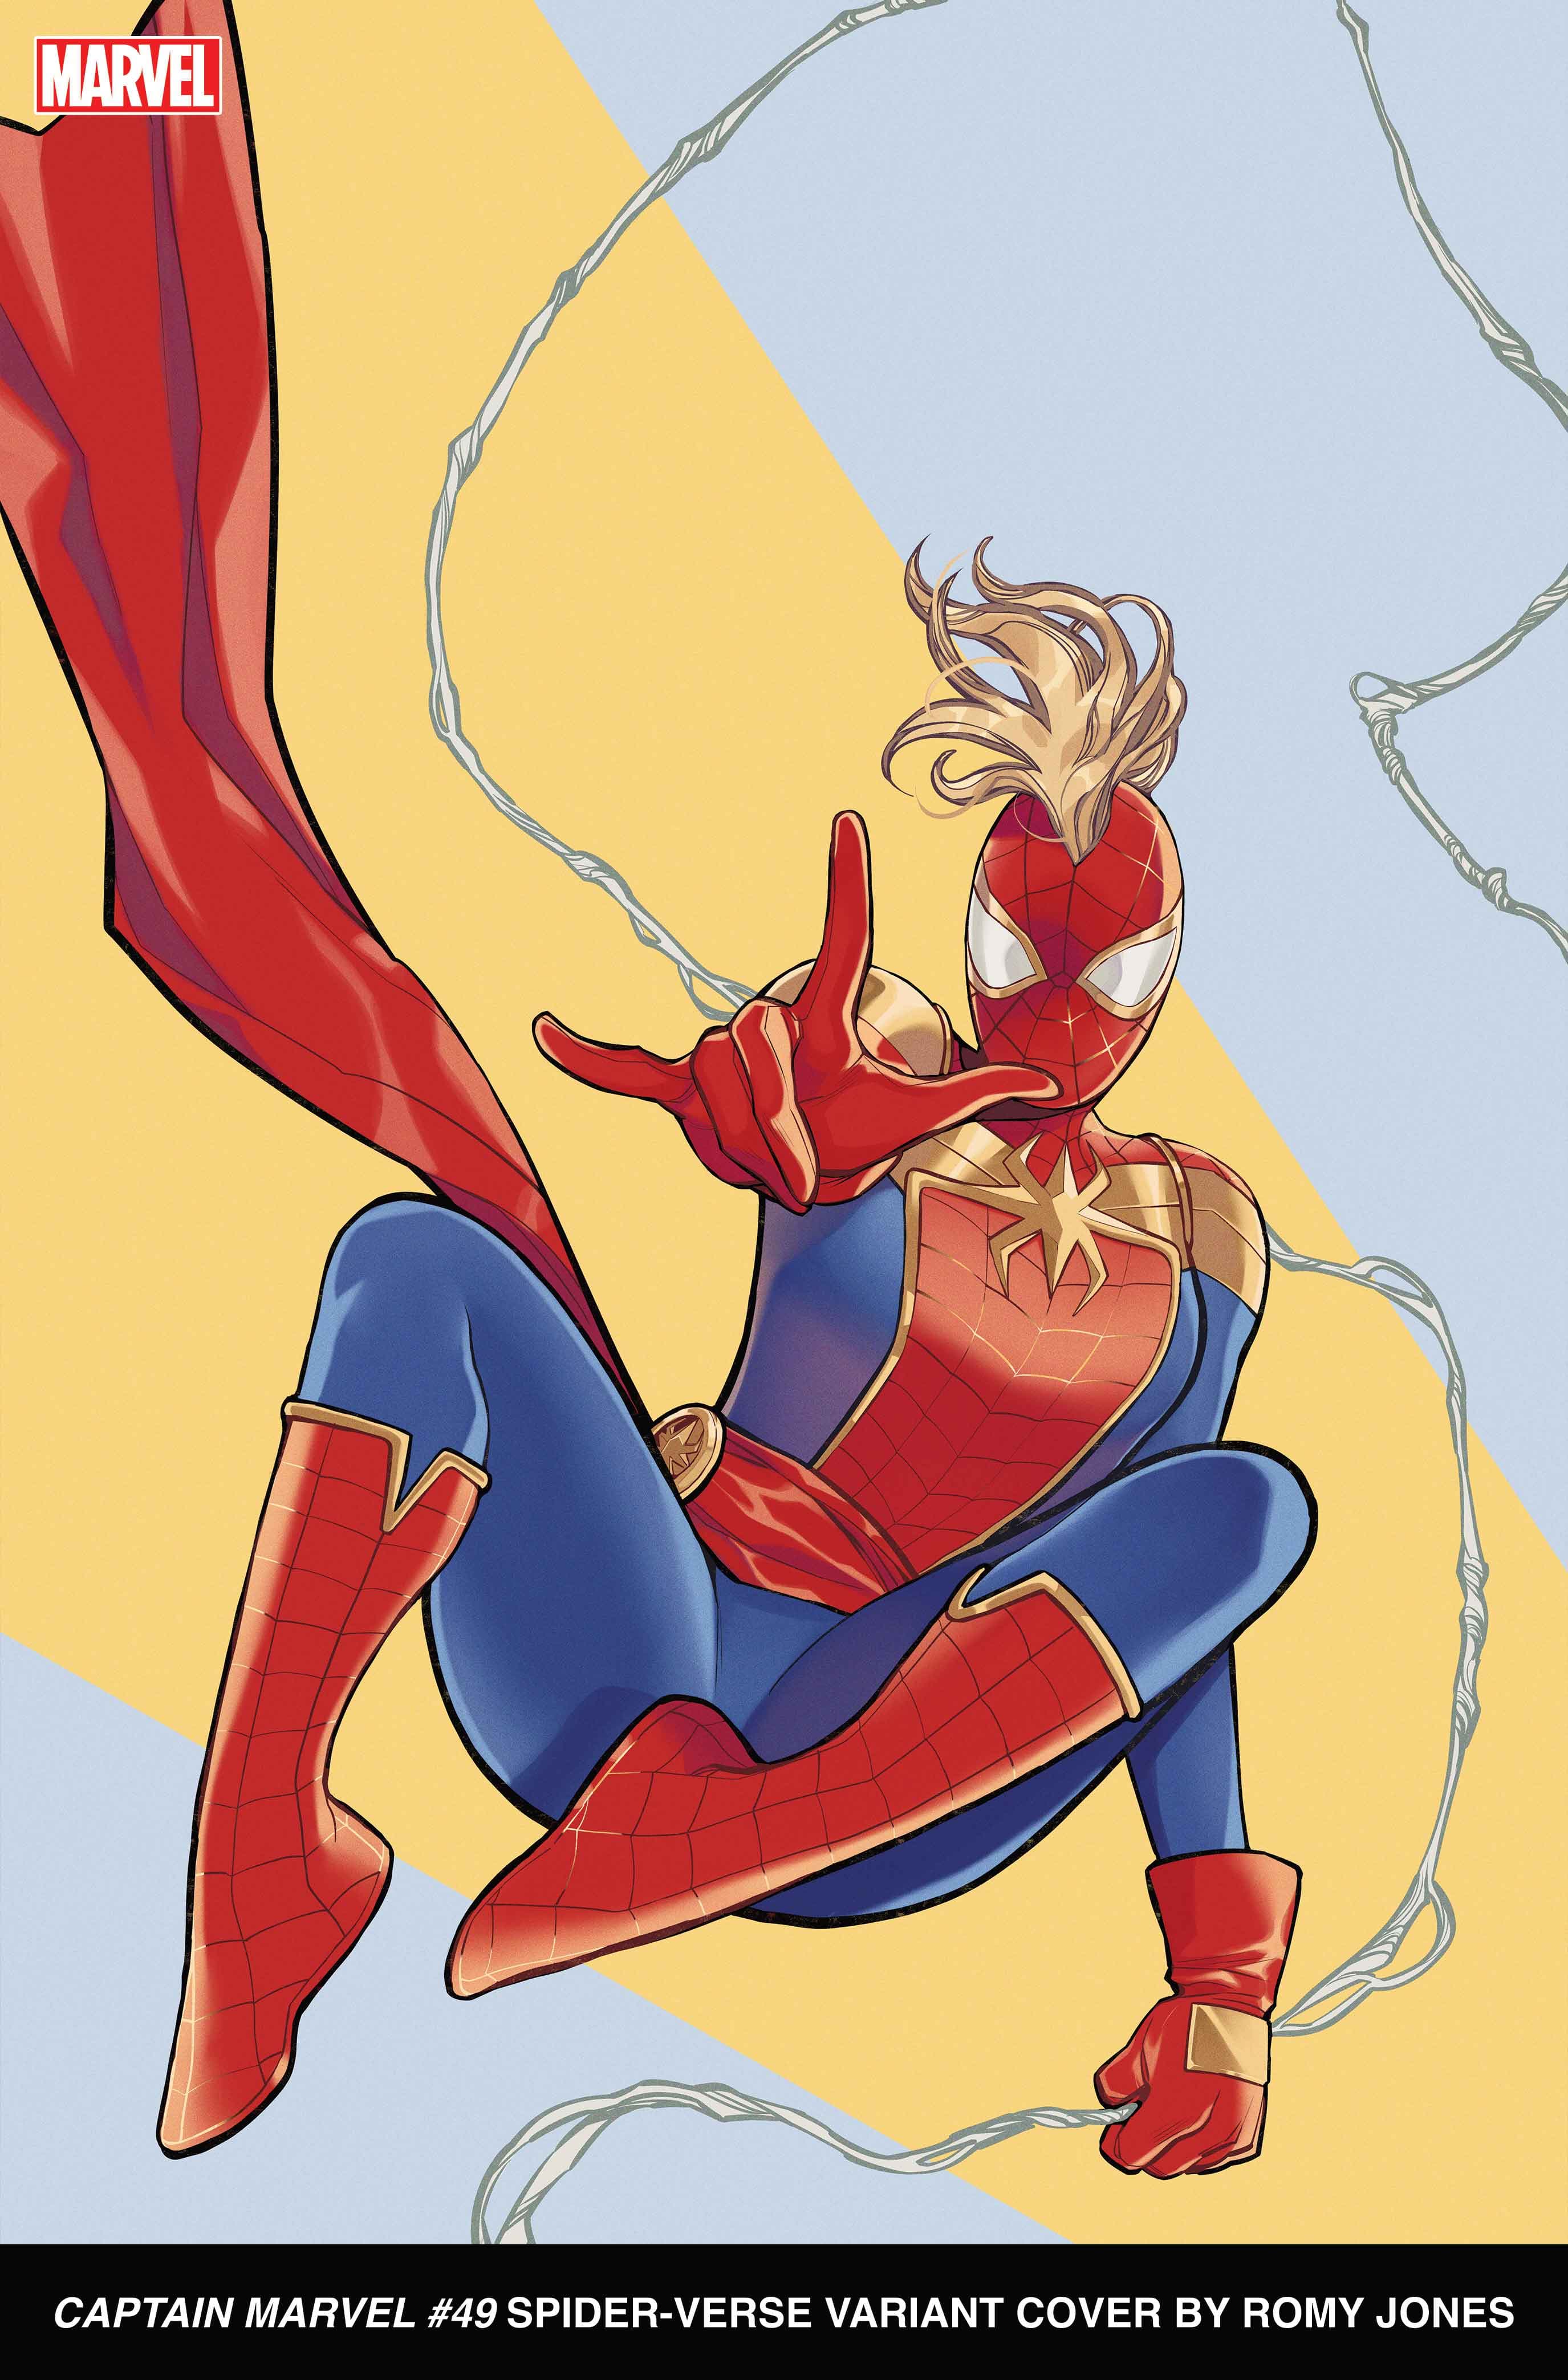 CAPTAIN MARVEL #49 Spider-Verse Variant Cover by Romy Jones